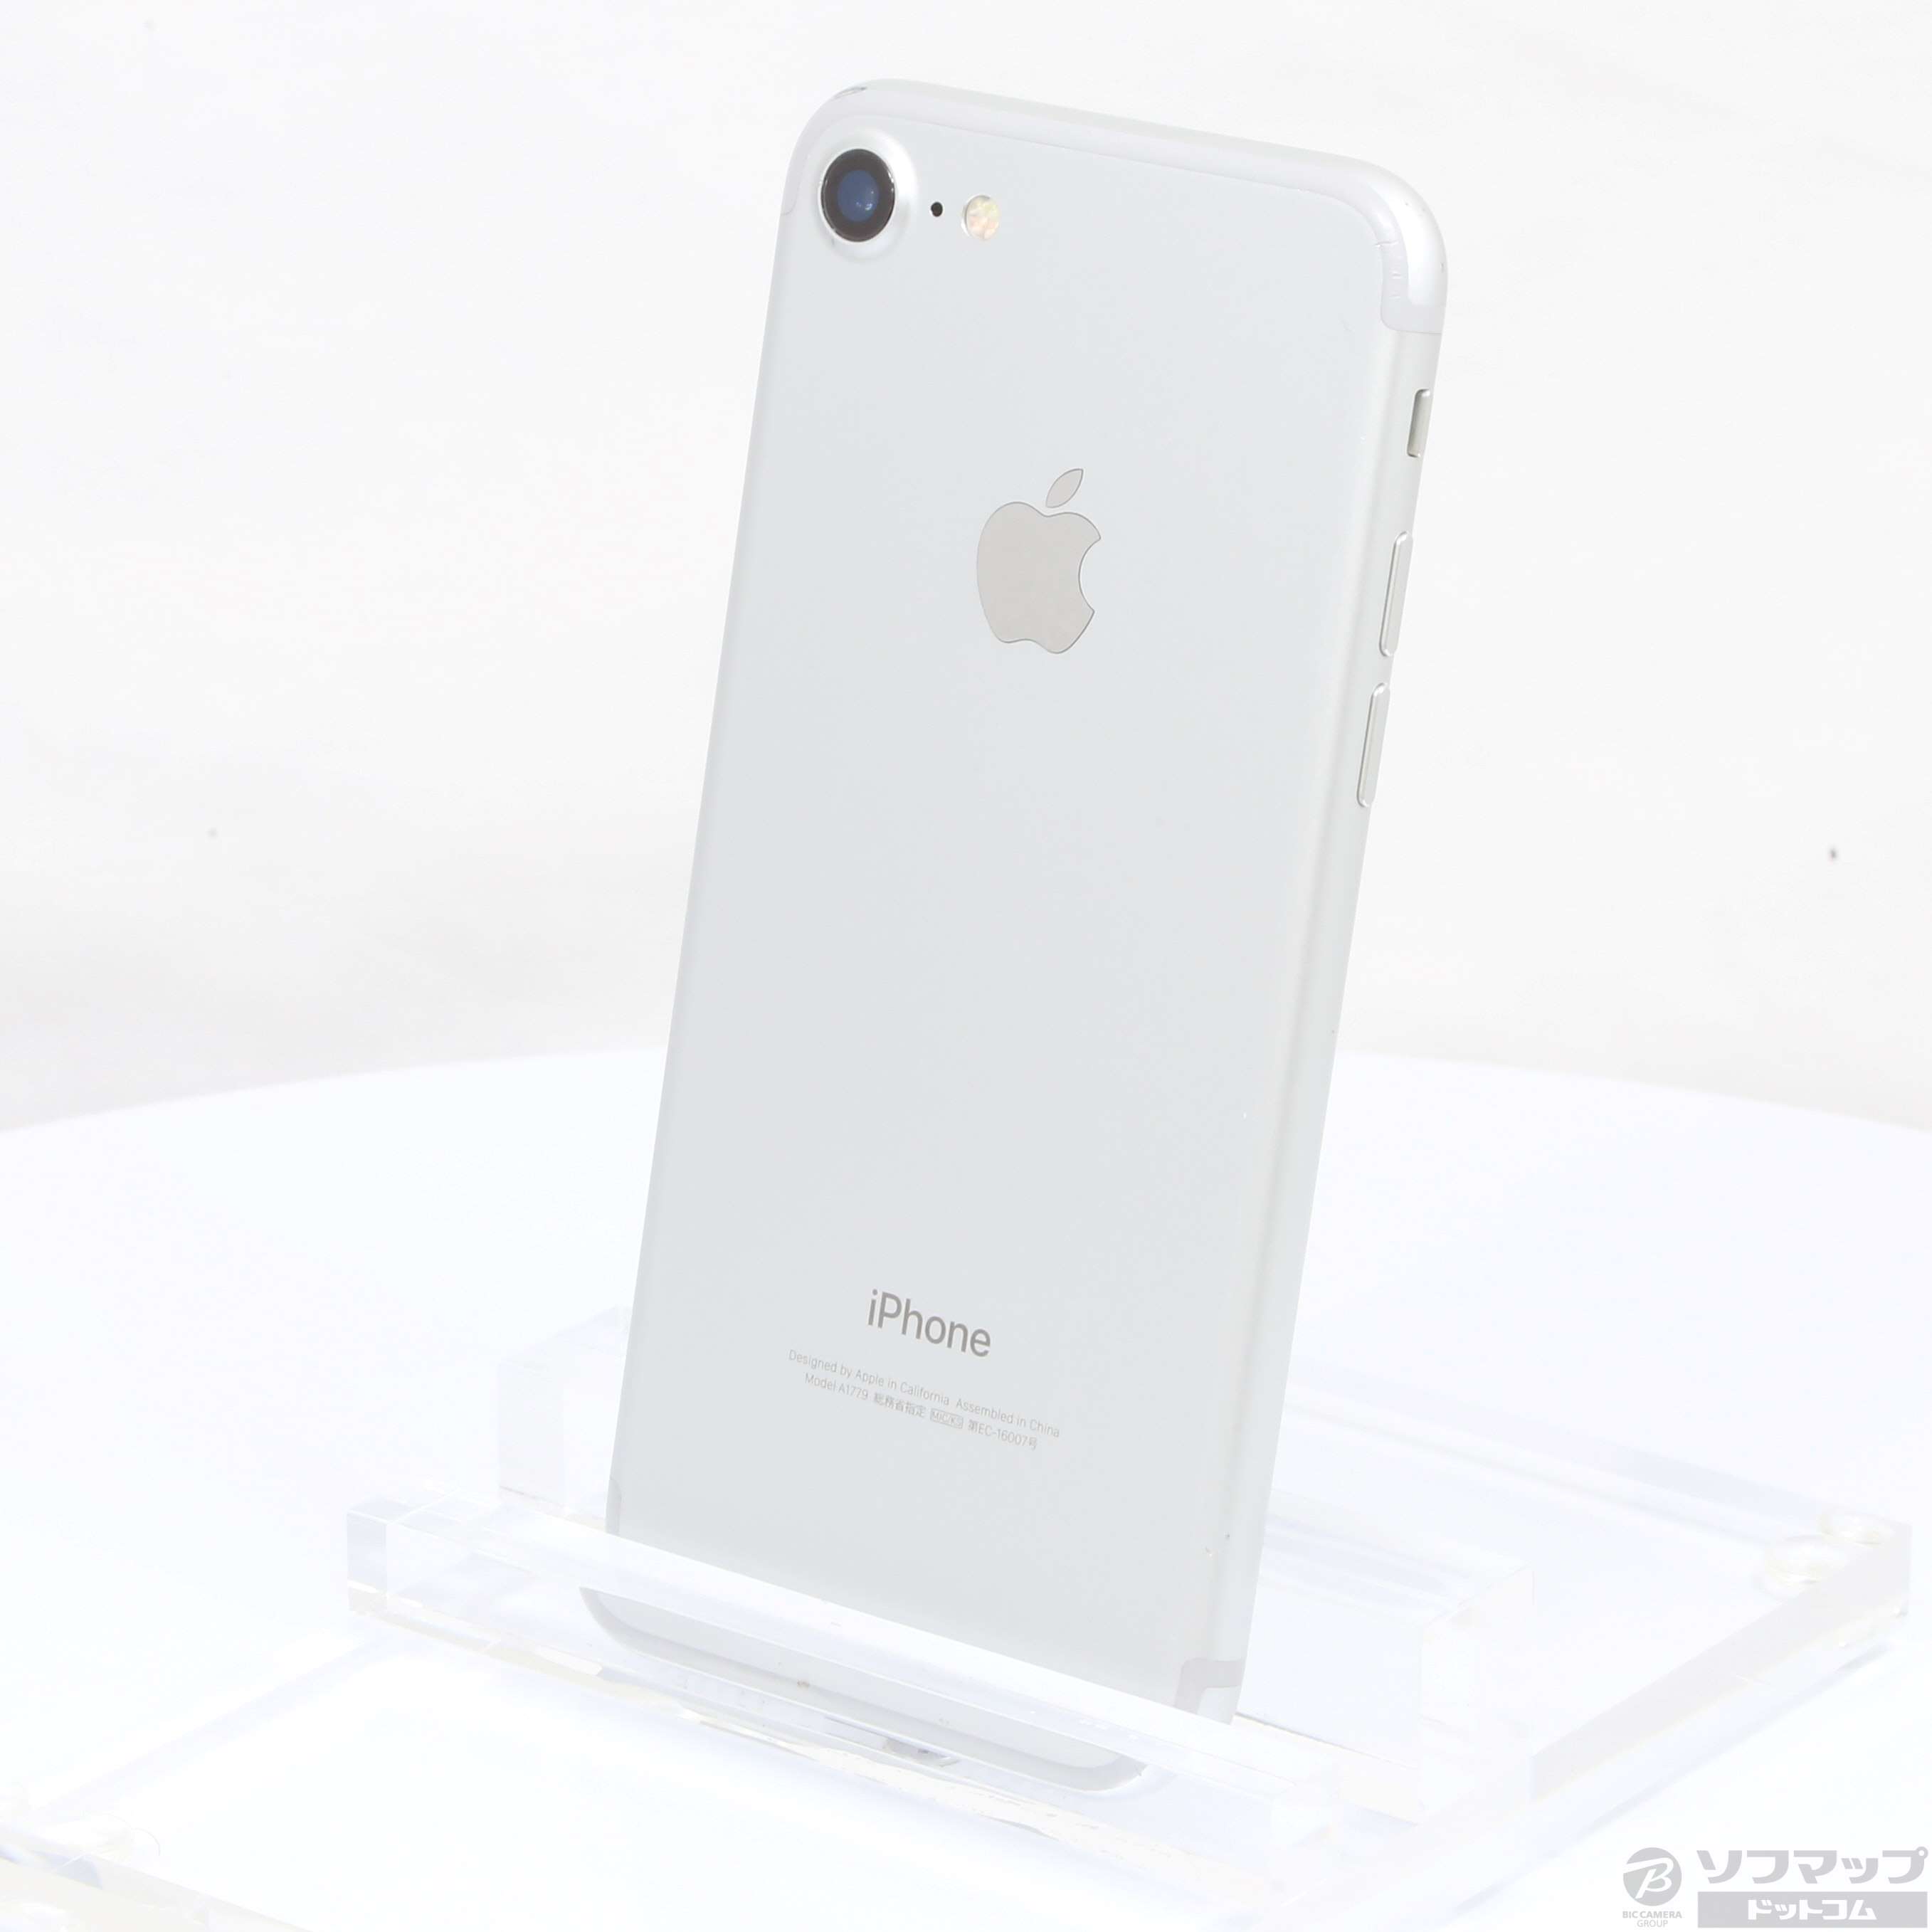 ドコモ iPhone 7 32GB シルバー Model A1779 - スマートフォン本体